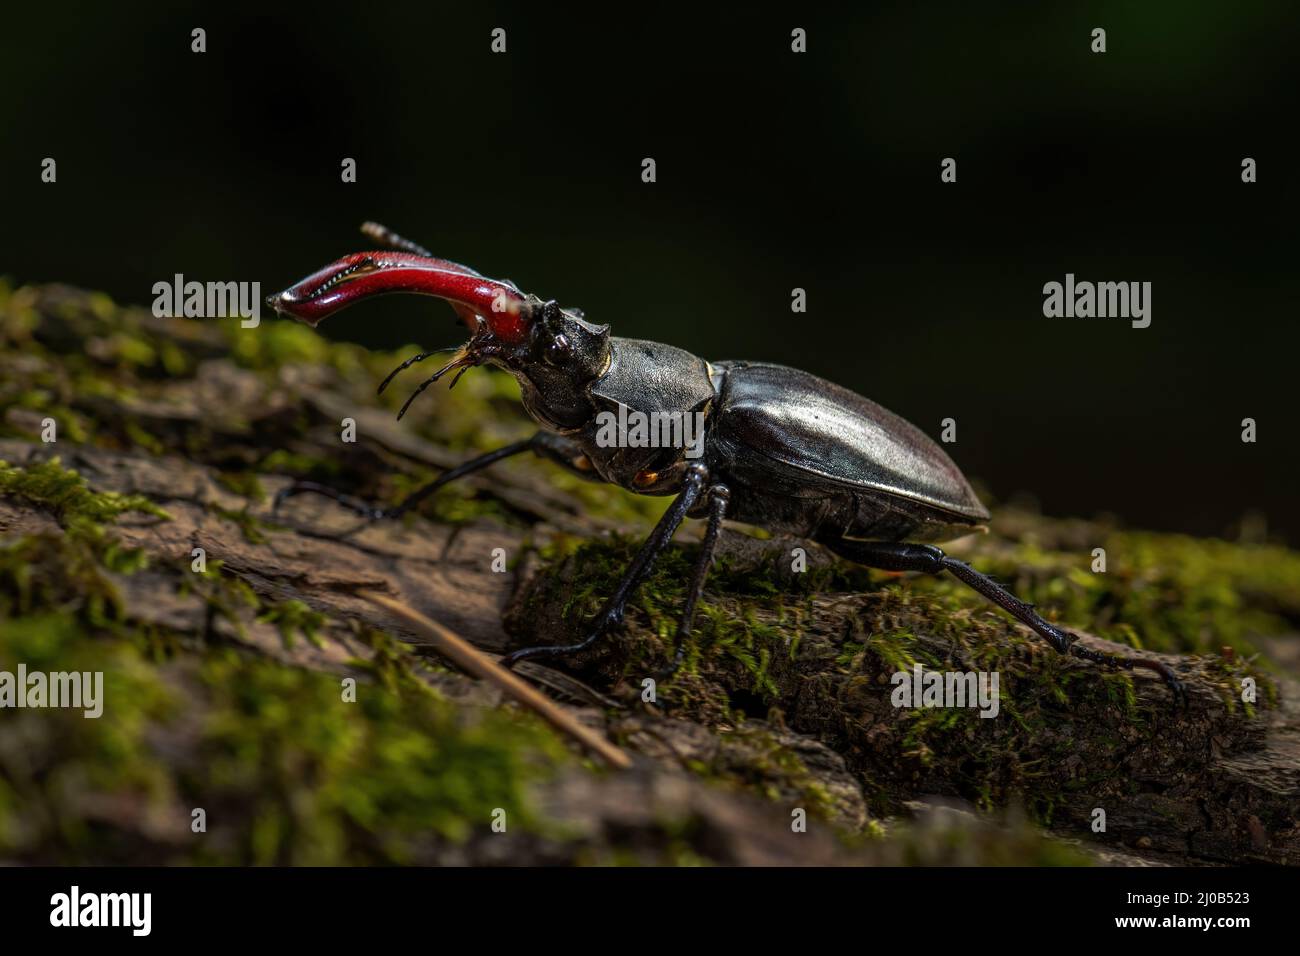 Escarabajo europeo del ciervo - Lucanus cervus, escarabajo icónico grande hermoso de bosques europeos y bosques, Zlin, República Checa. Foto de stock